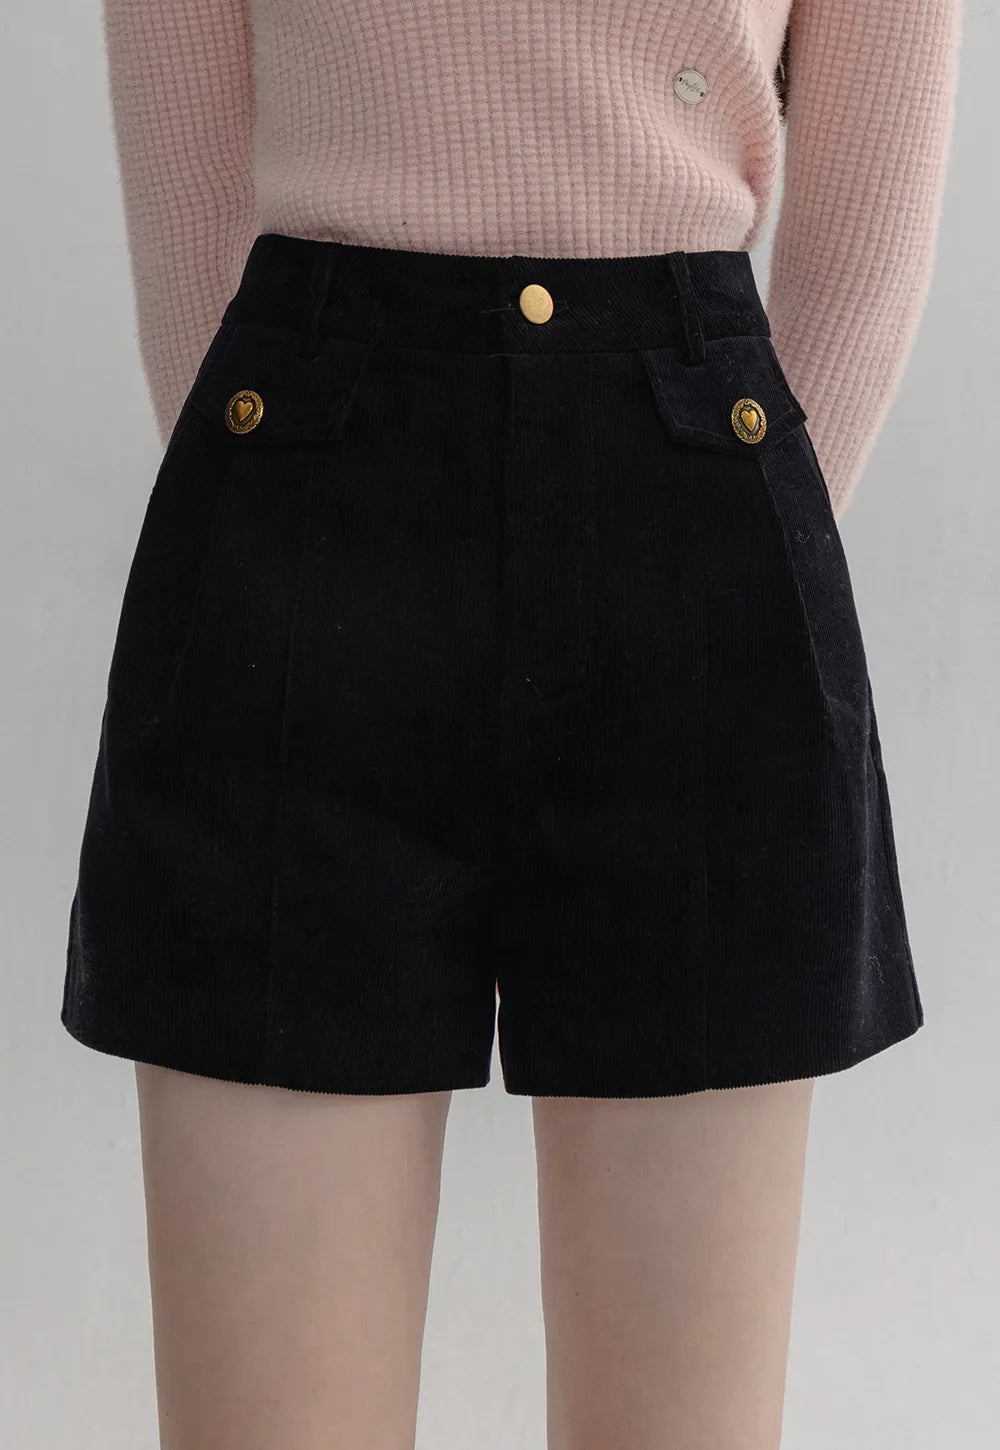 Damen-Shorts aus Cord mit hohem Bund